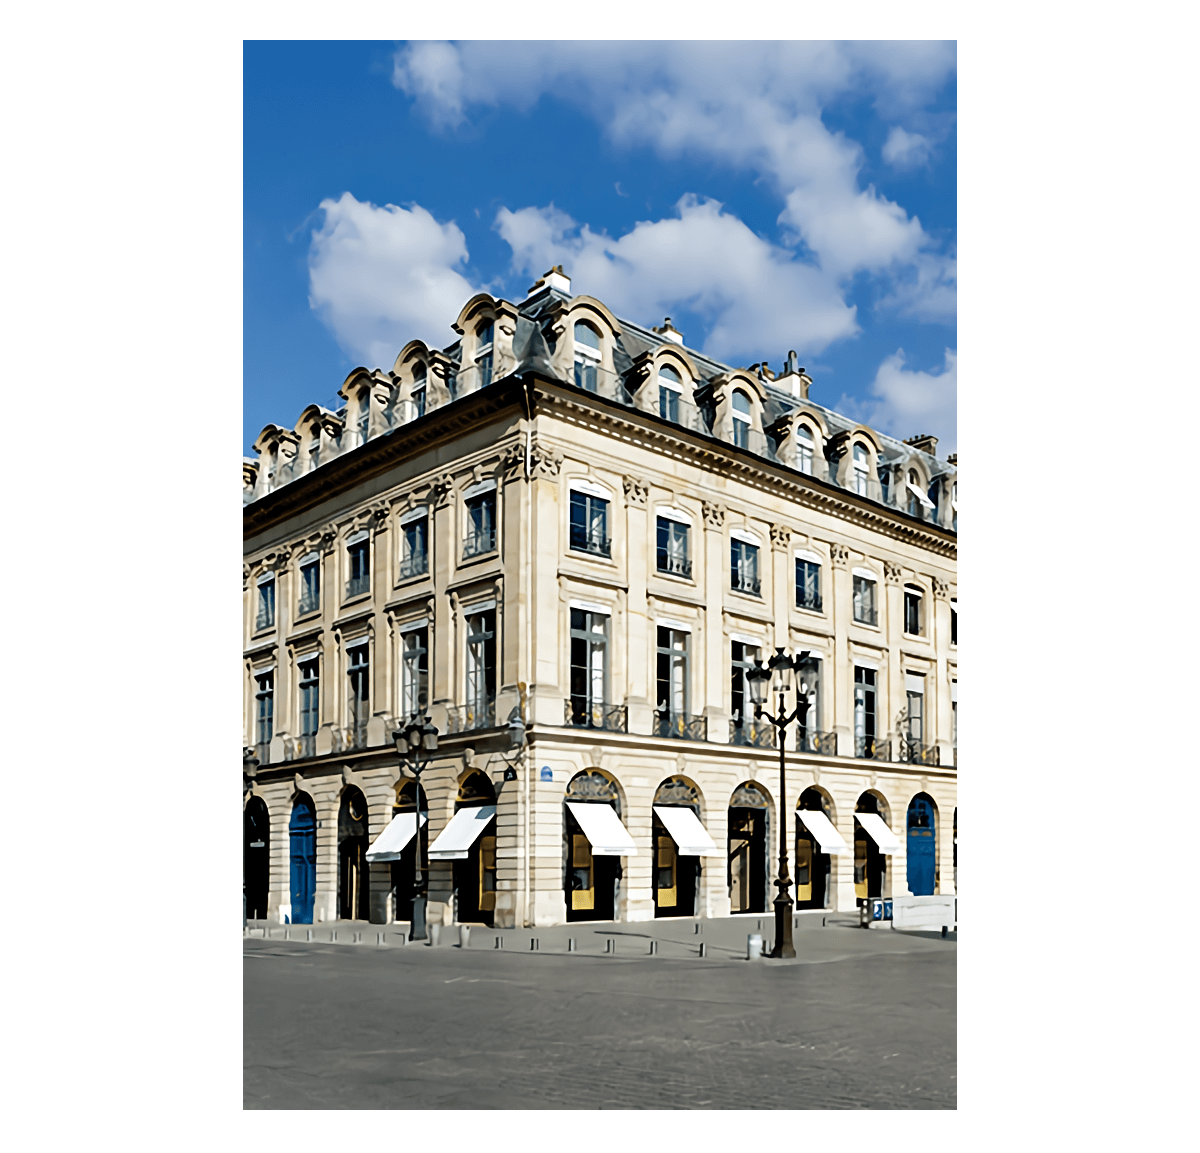 〝ブシュロン〟のパリ・ヴァンドーム広場のブティック画像